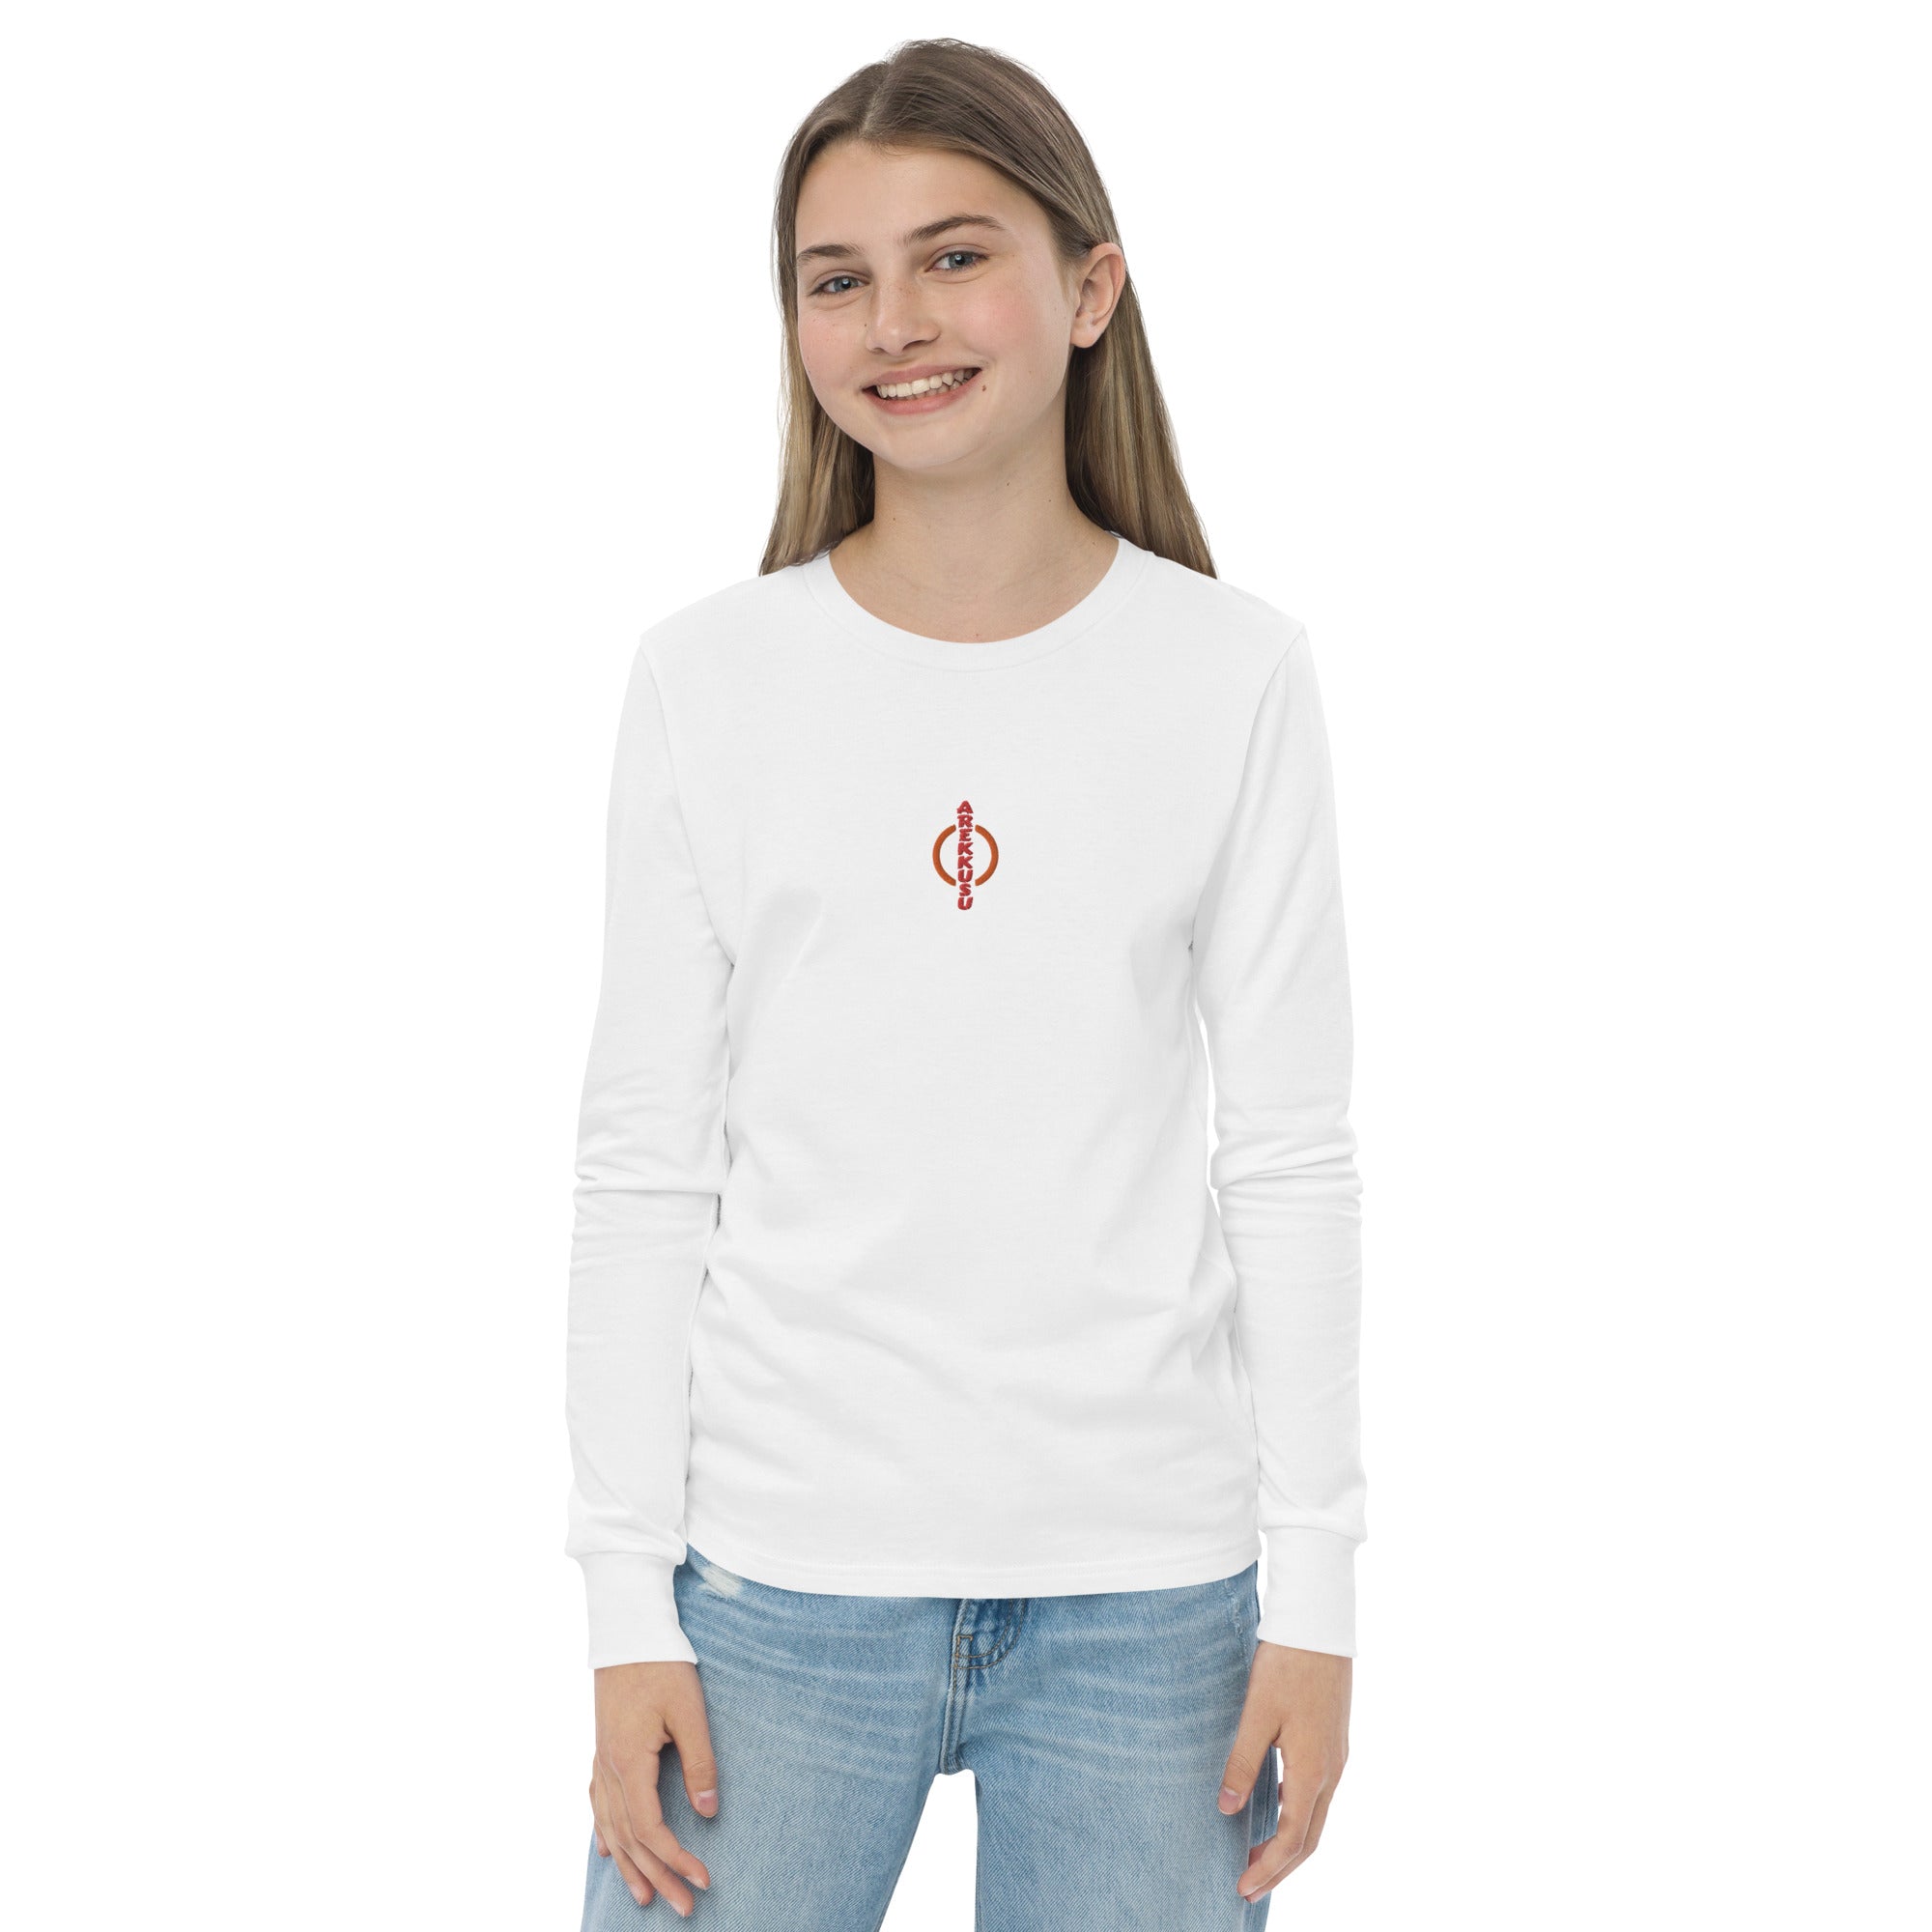 Unisex Youth Long Sleeve Shirt-17